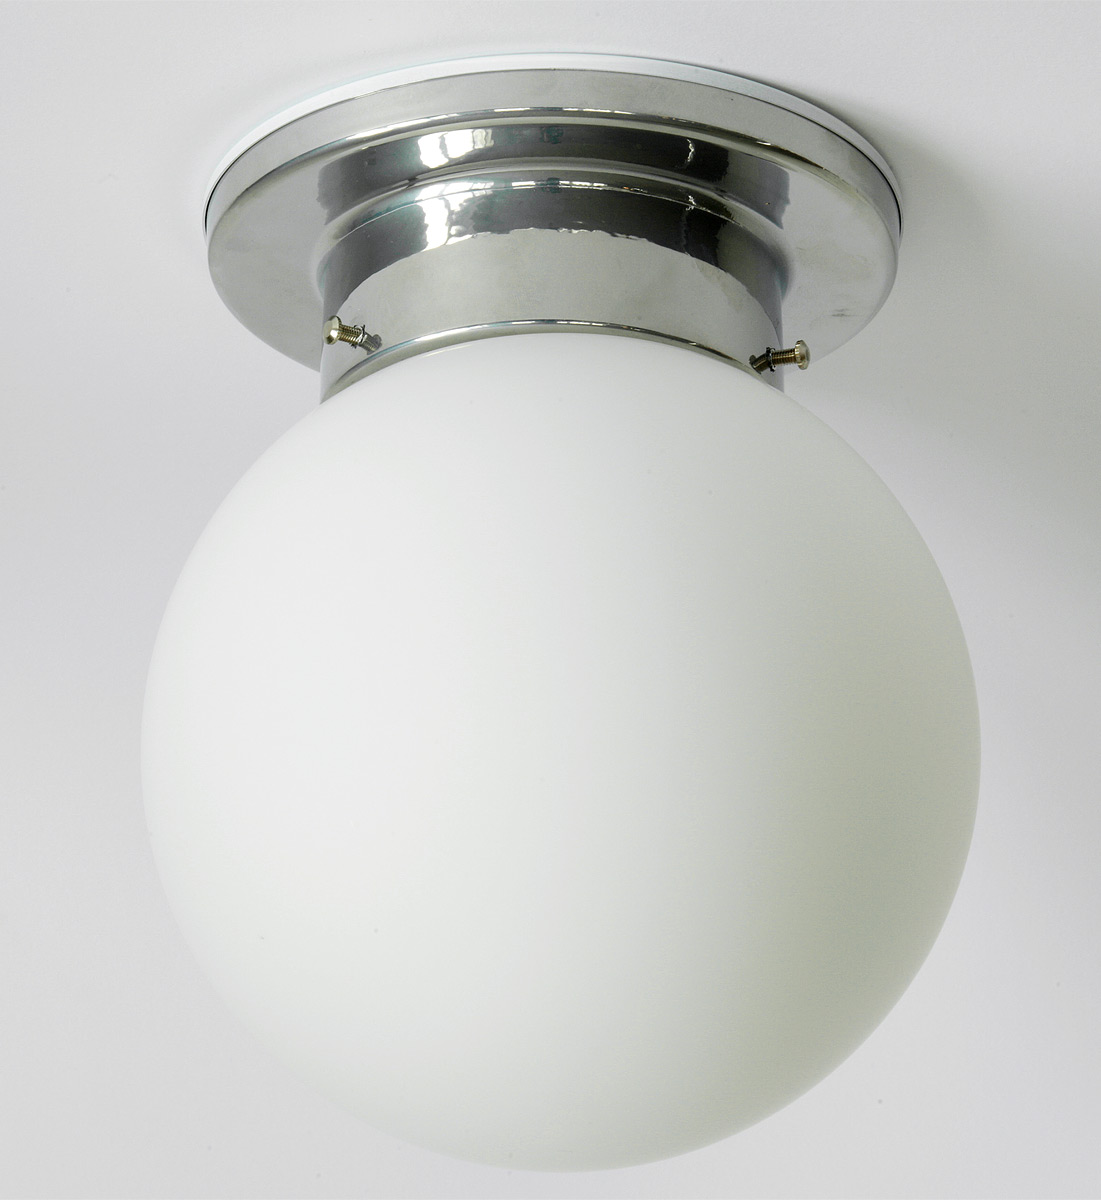 Funktionale Kugel-Deckenlampe für Bad und Diele GLOBO, Ø 20/25/30 cm: Kugel-Deckenlampe, abgedichtete Version mit Deckenplatte (kleines Modell Ø 20 cm)